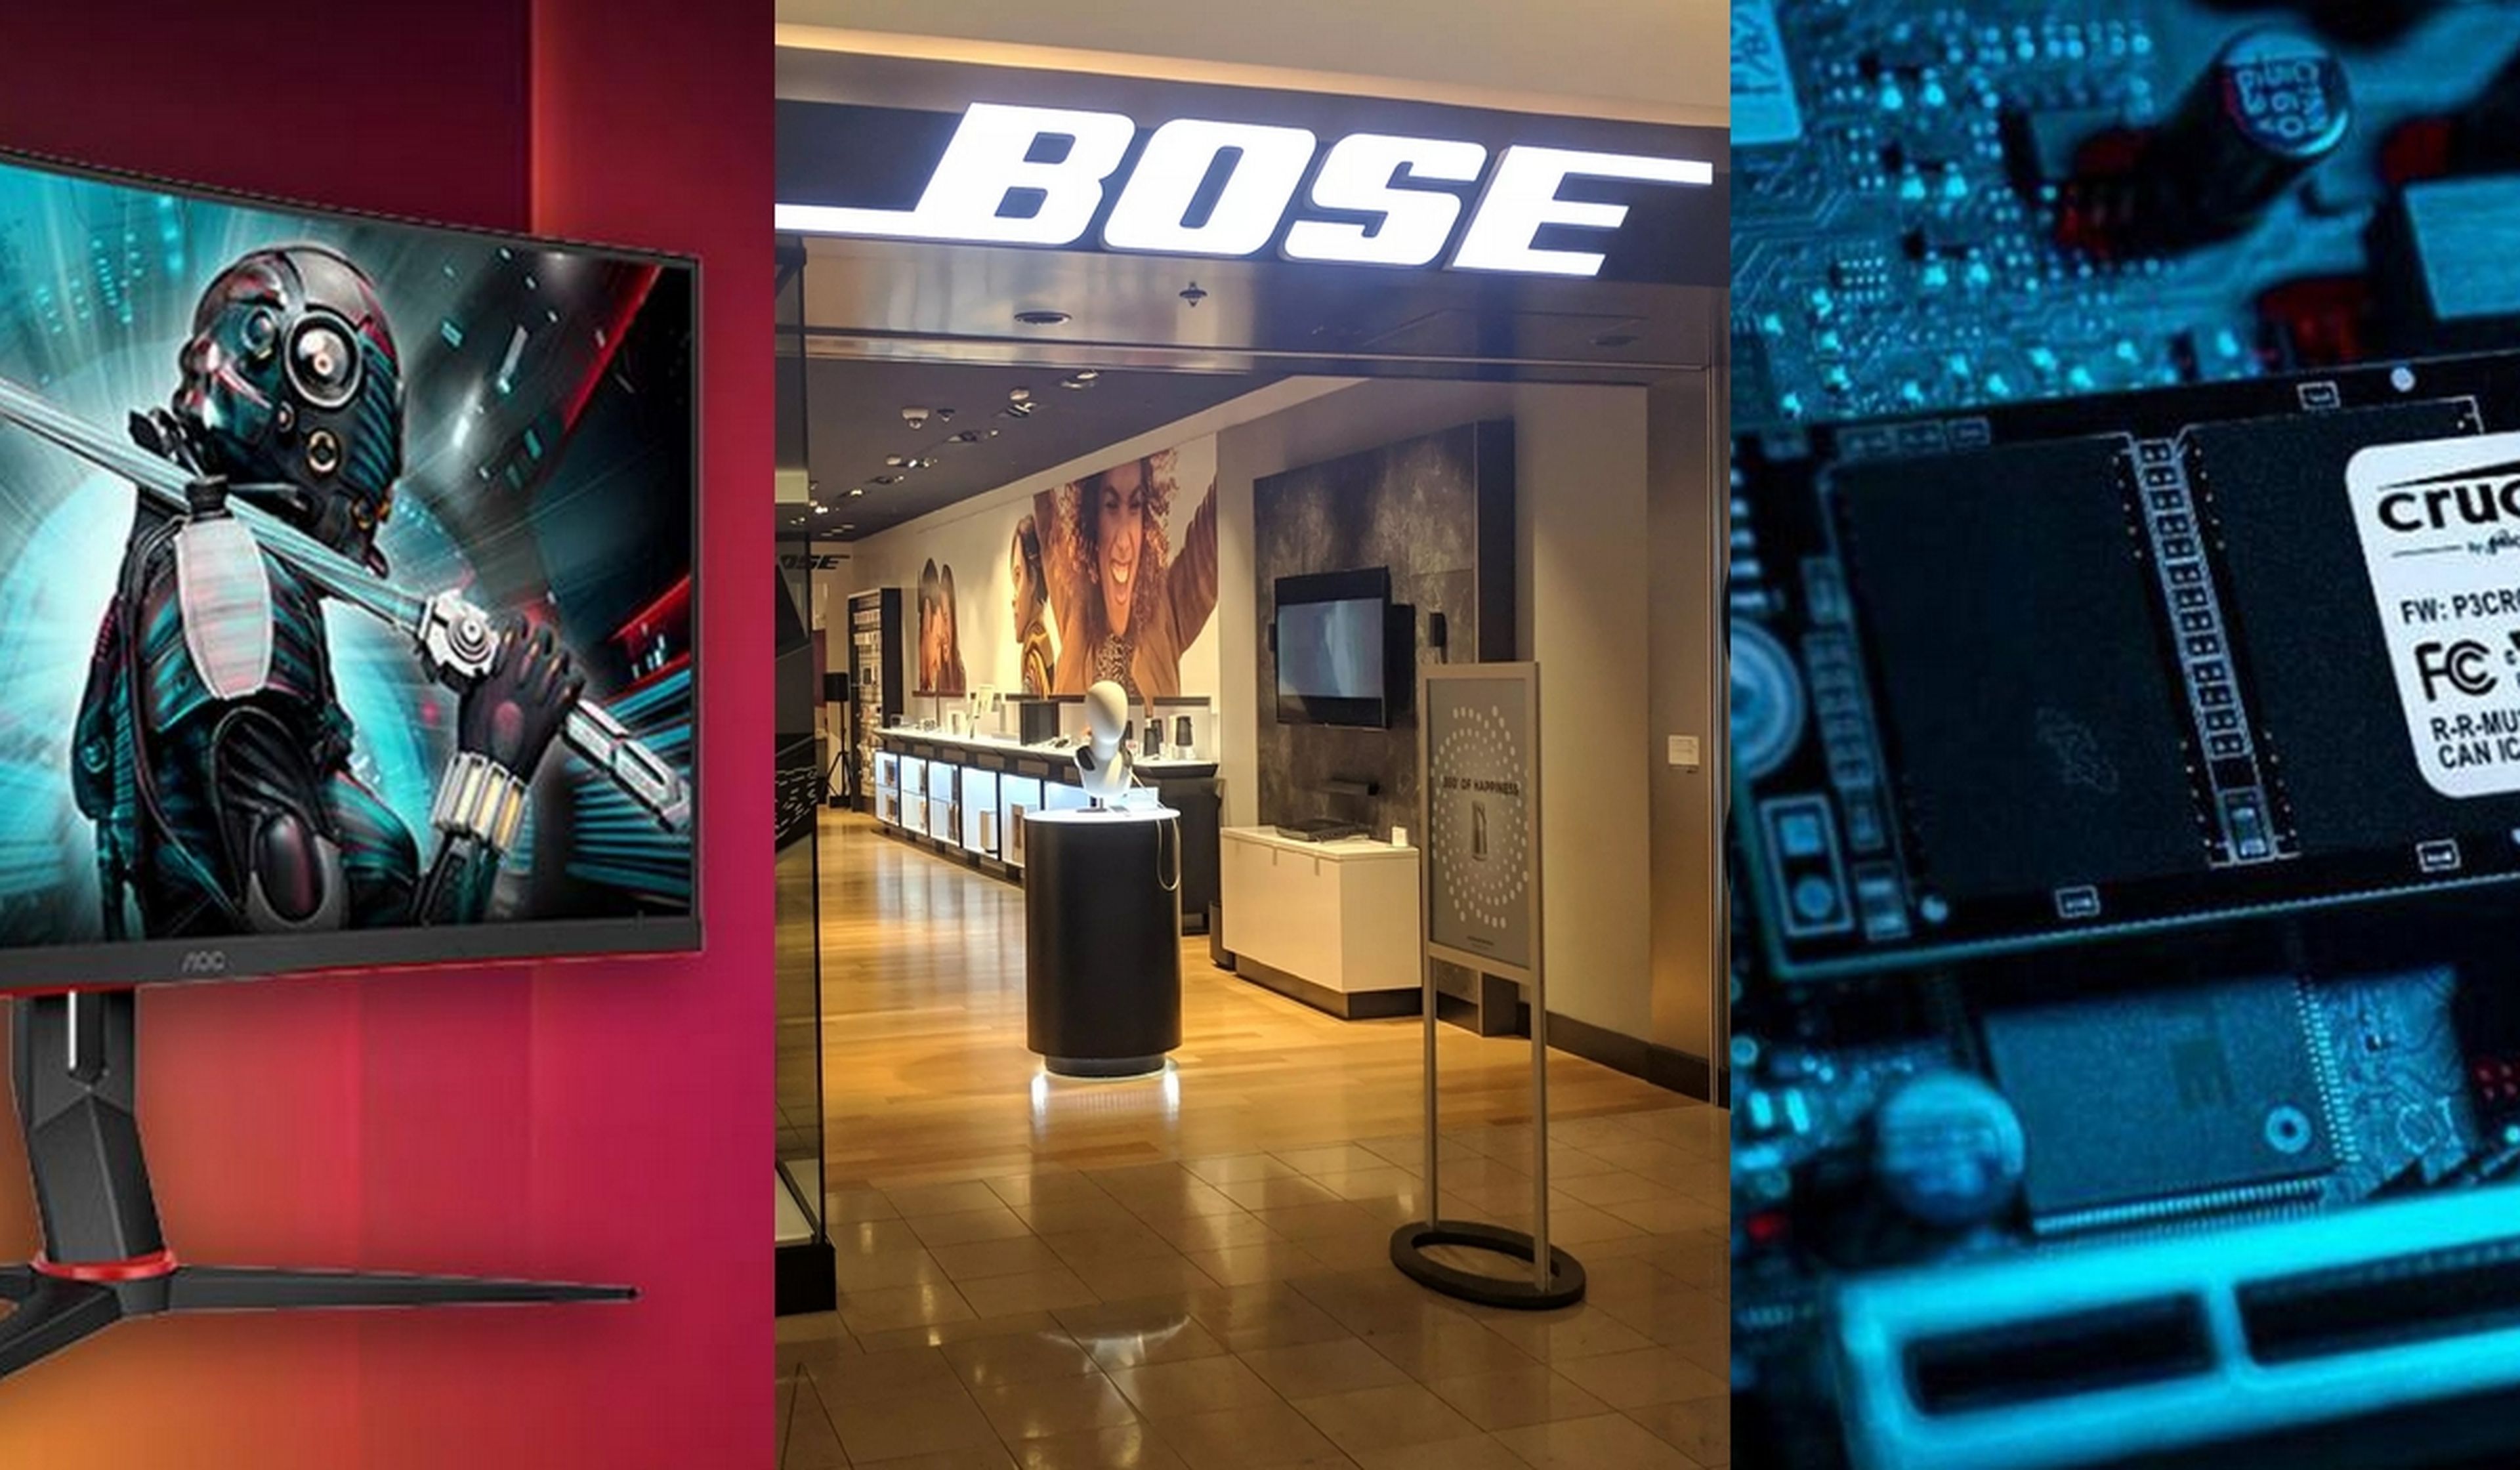 Bose cierra todas sus tiendas físicas, y otras noticias de tecnología resumidas del día